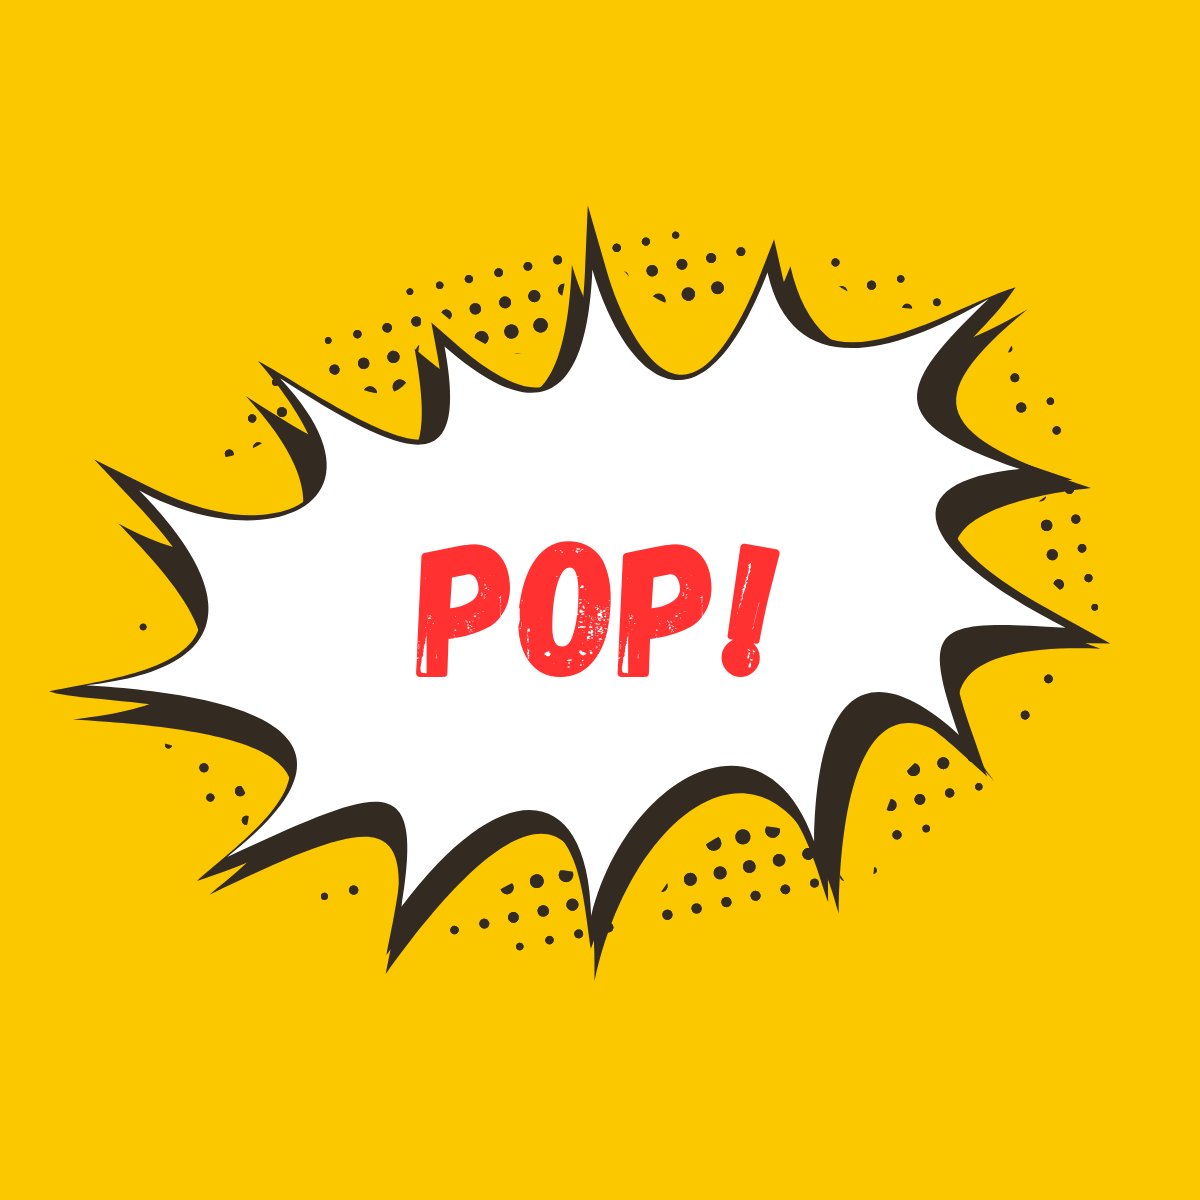 Pop! - Social-Proof-Popups